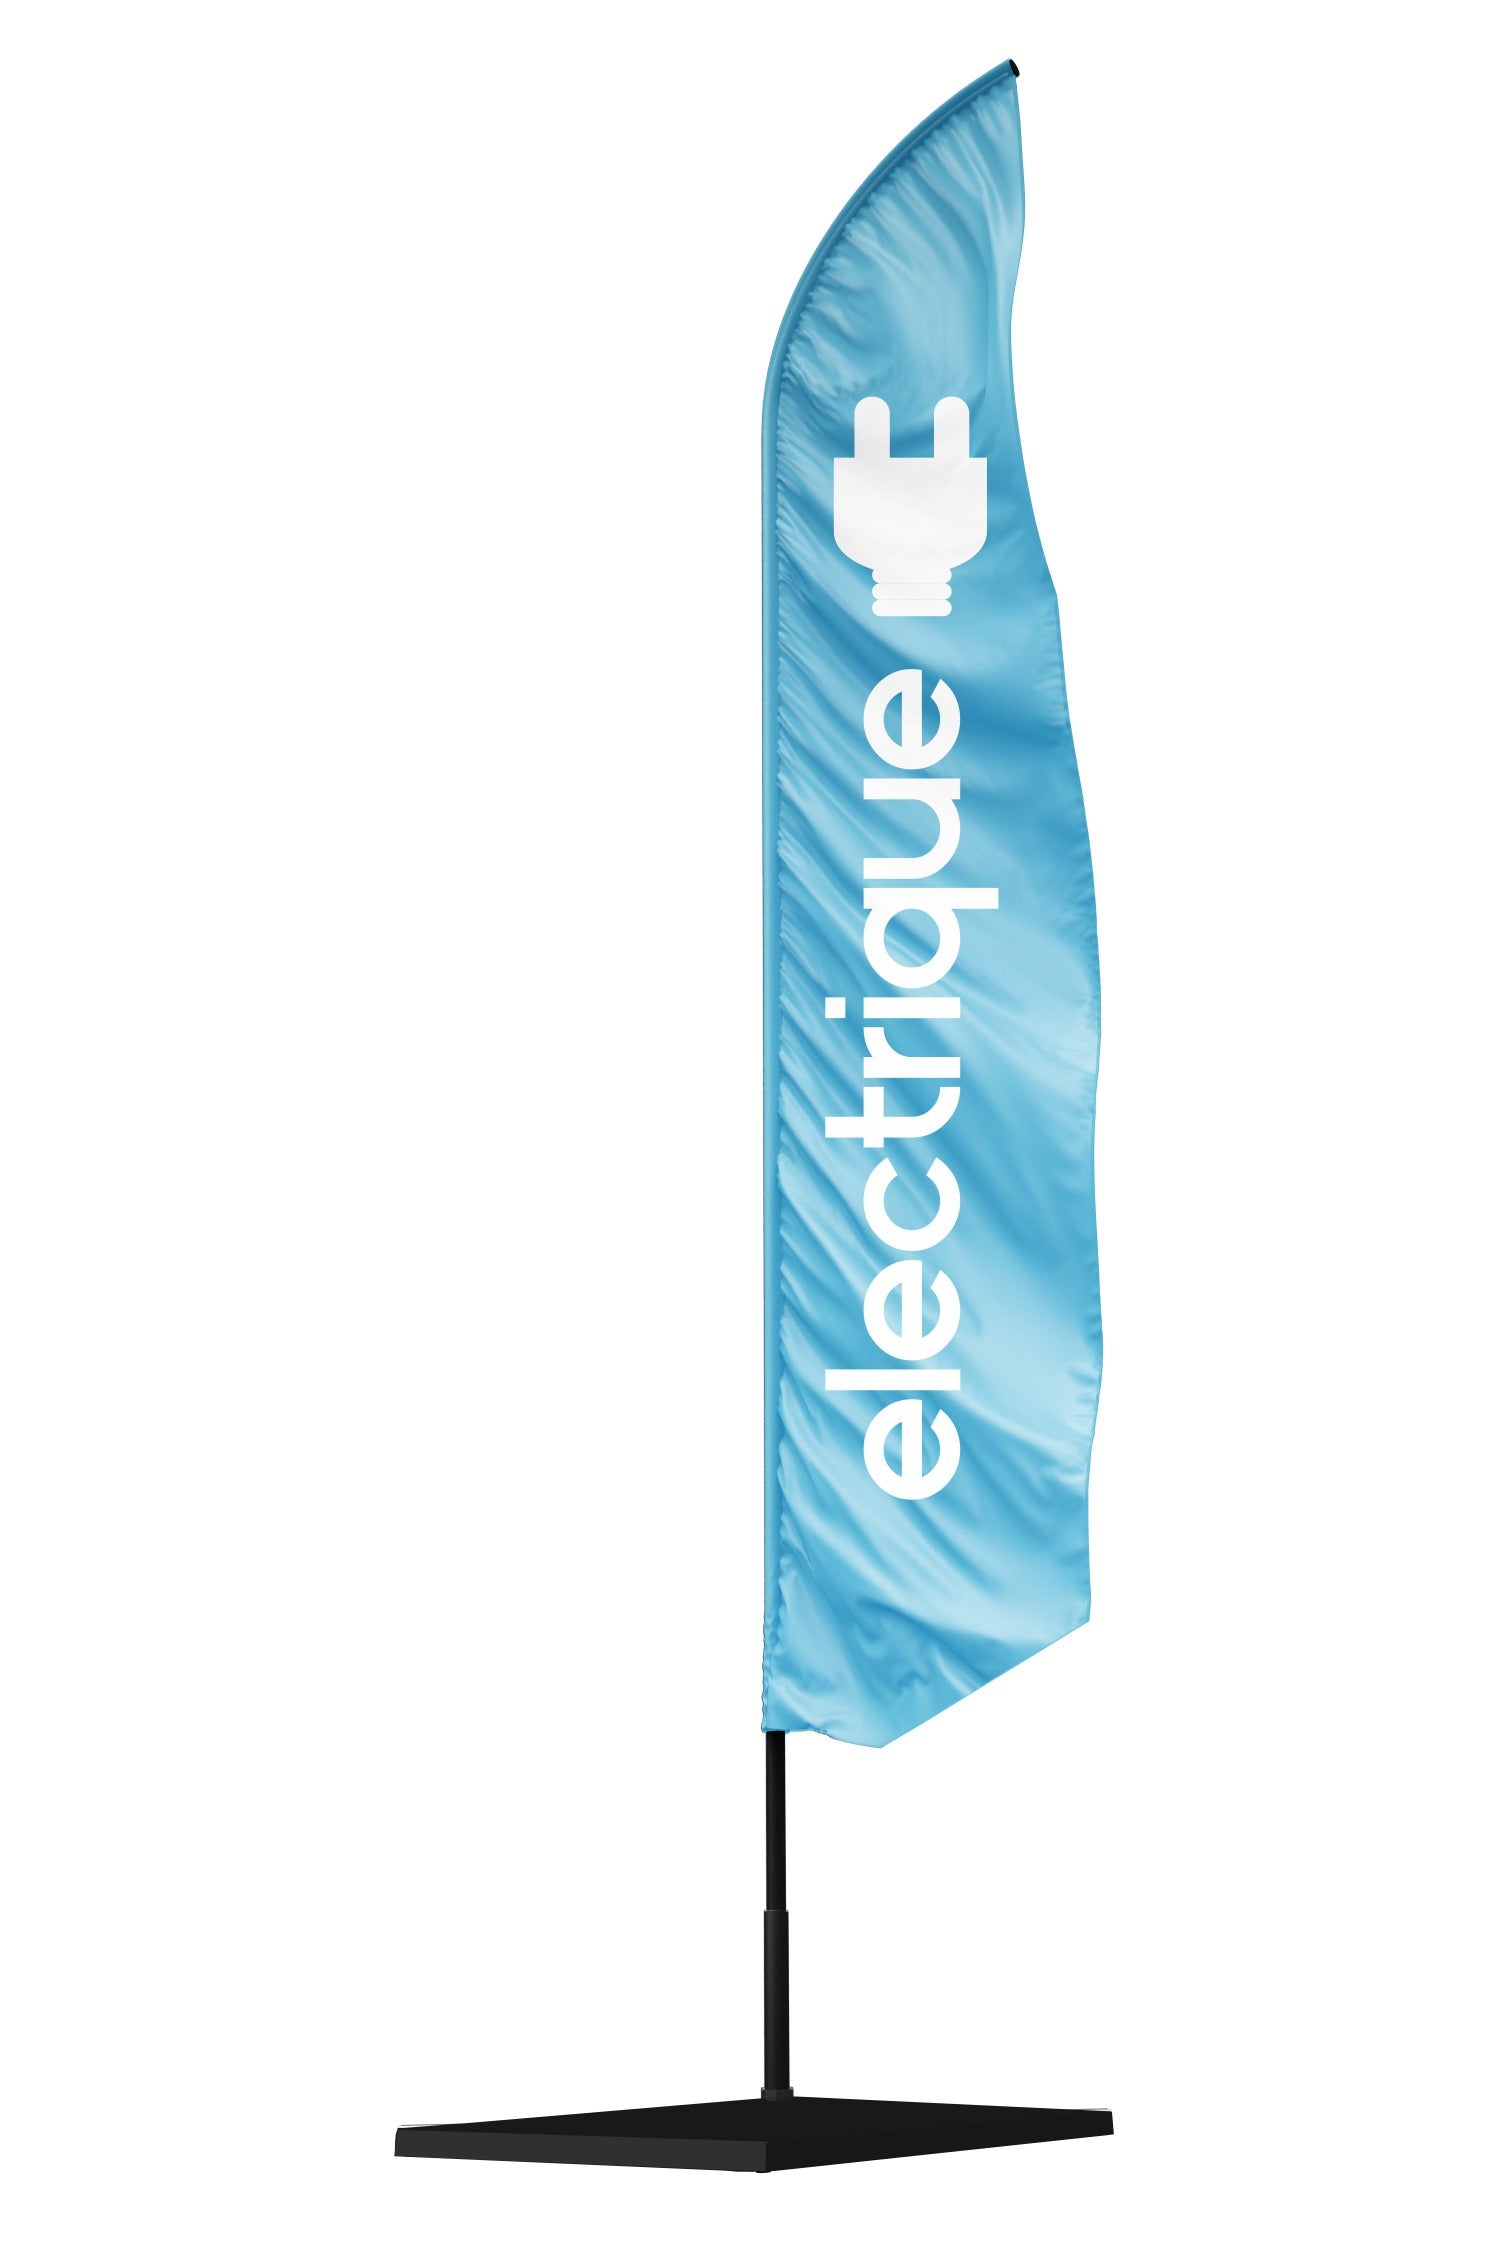 Drapeau  publicitaire bleu avec une grande inscription blanche électrique  et un logo d'une prise électrique en haut de la voile